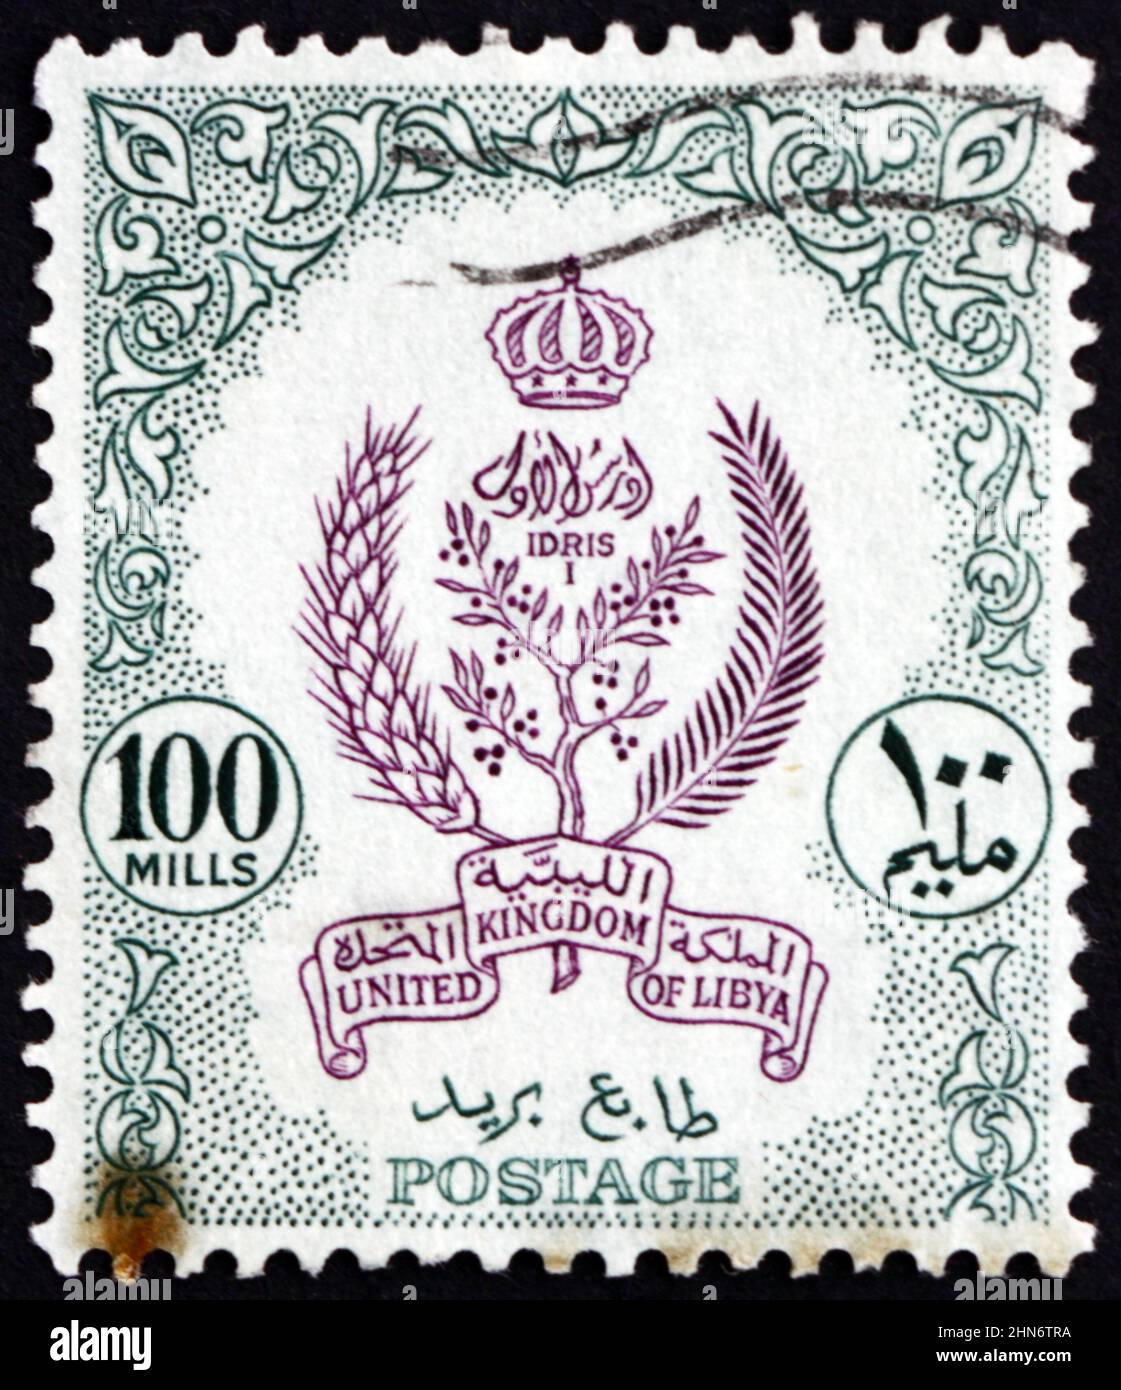 LIBYEN - UM 1955: Eine in Libyen gedruckte Marke zeigt Embleme von Tripolitania, Cyrenaica und Fezzan mit Königlicher Krone, um 1955 Stockfoto